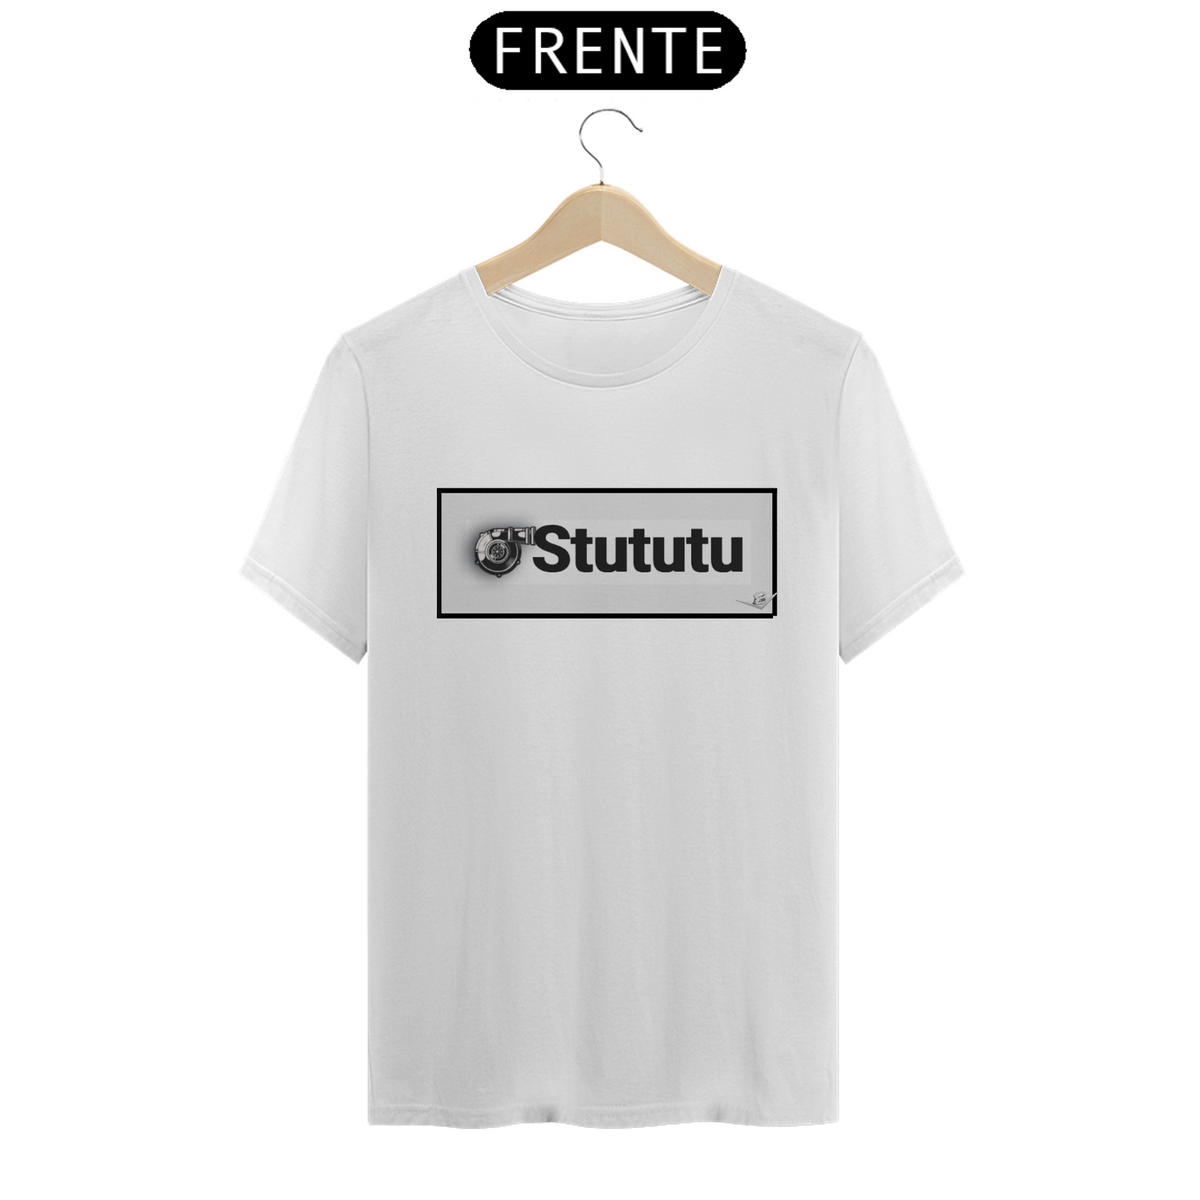 Nome do produto: STUTUTU 2.0